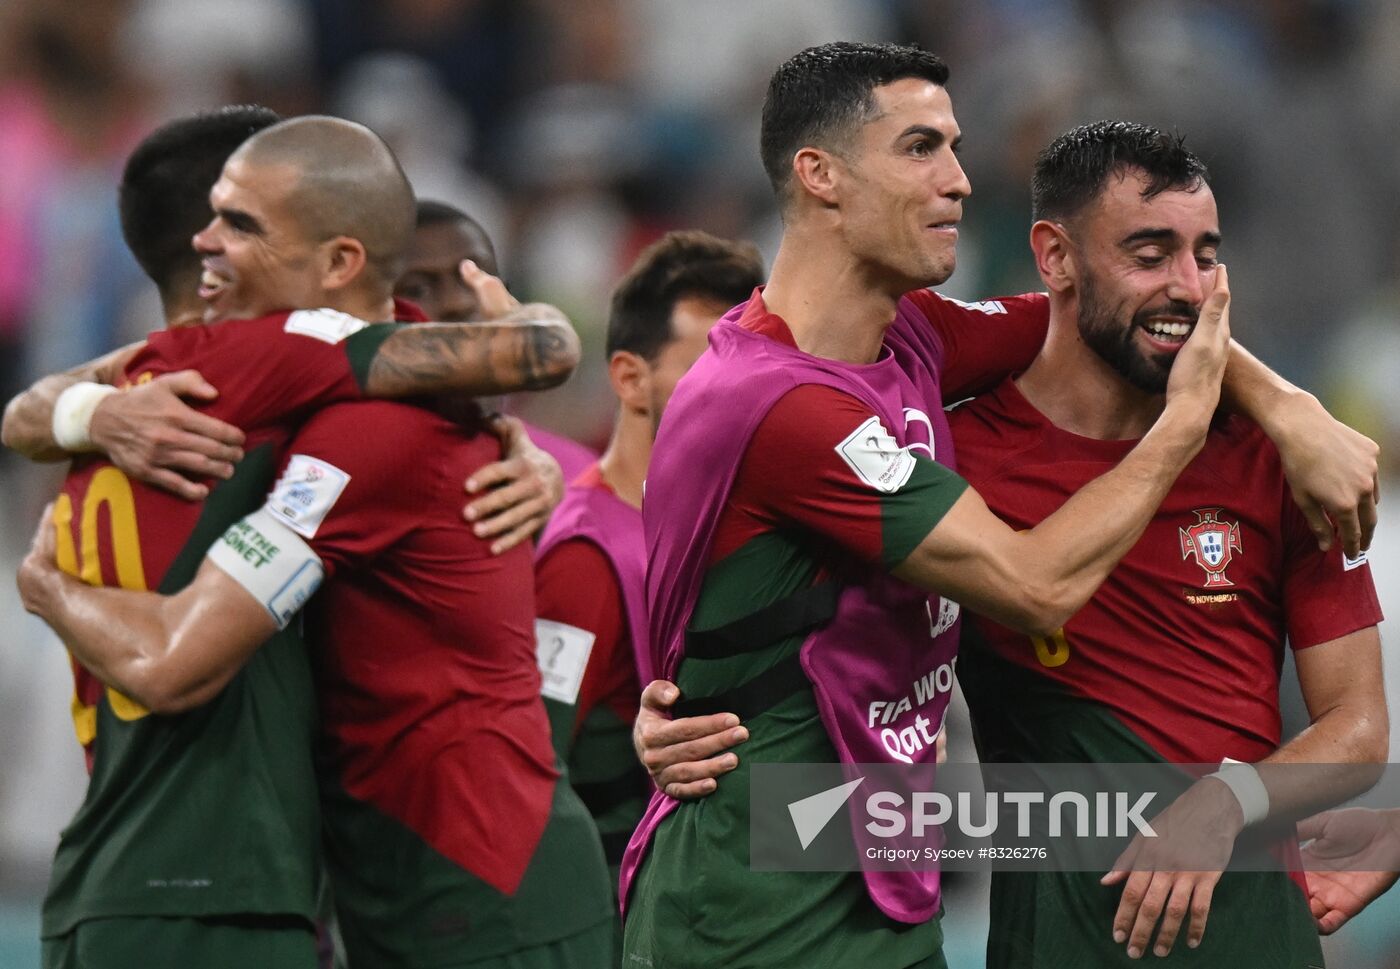 Qatar Soccer World Cup Portugal - Uruguay